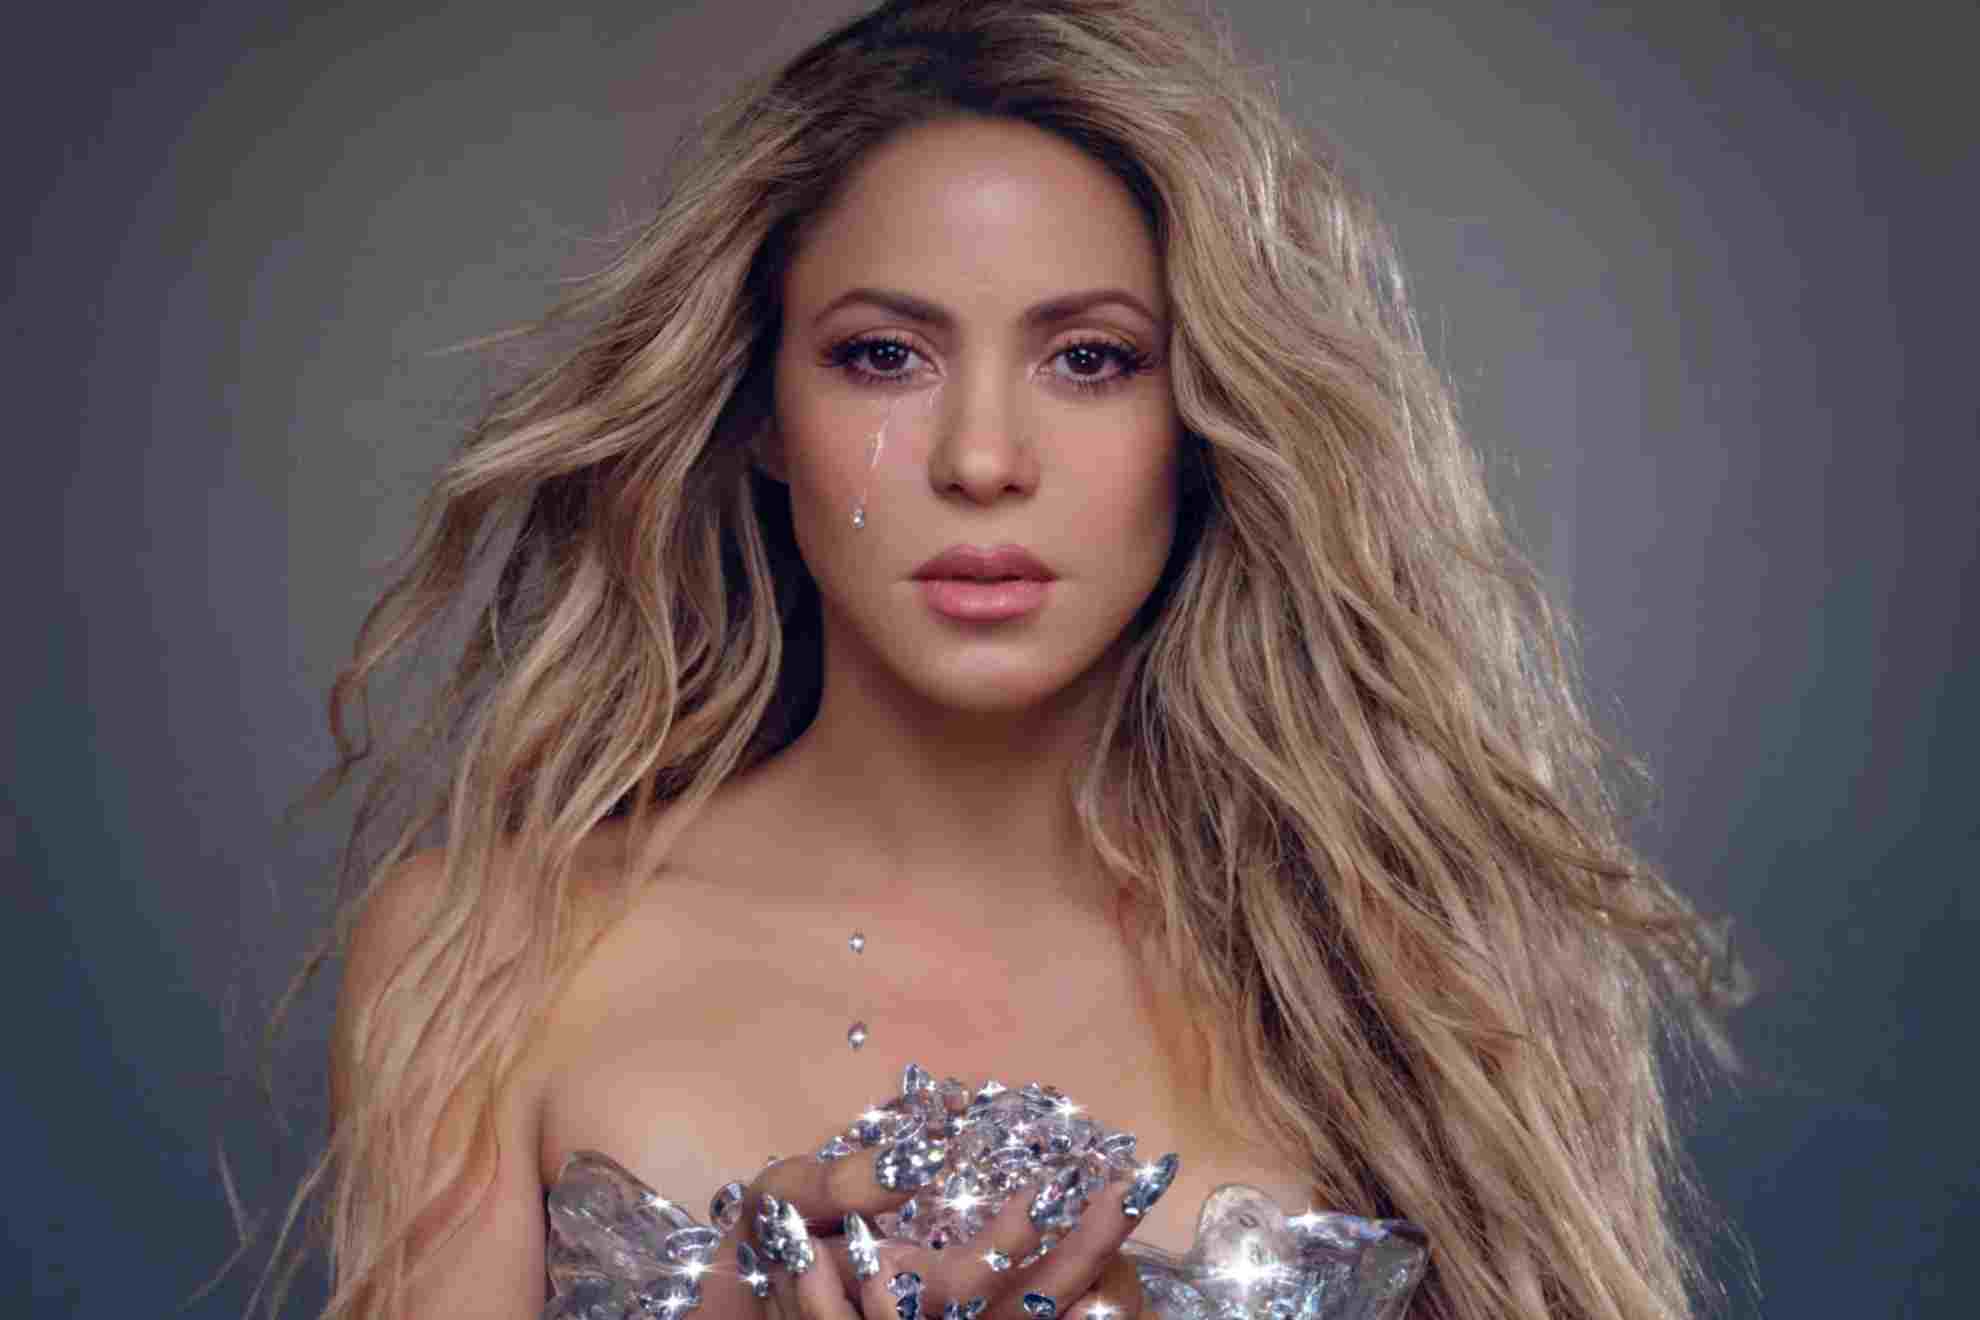 Letra de Punter�a, la canci�n de Shakira en la que se despide de Piqu�: Se perdi� el amor a mitad de camino